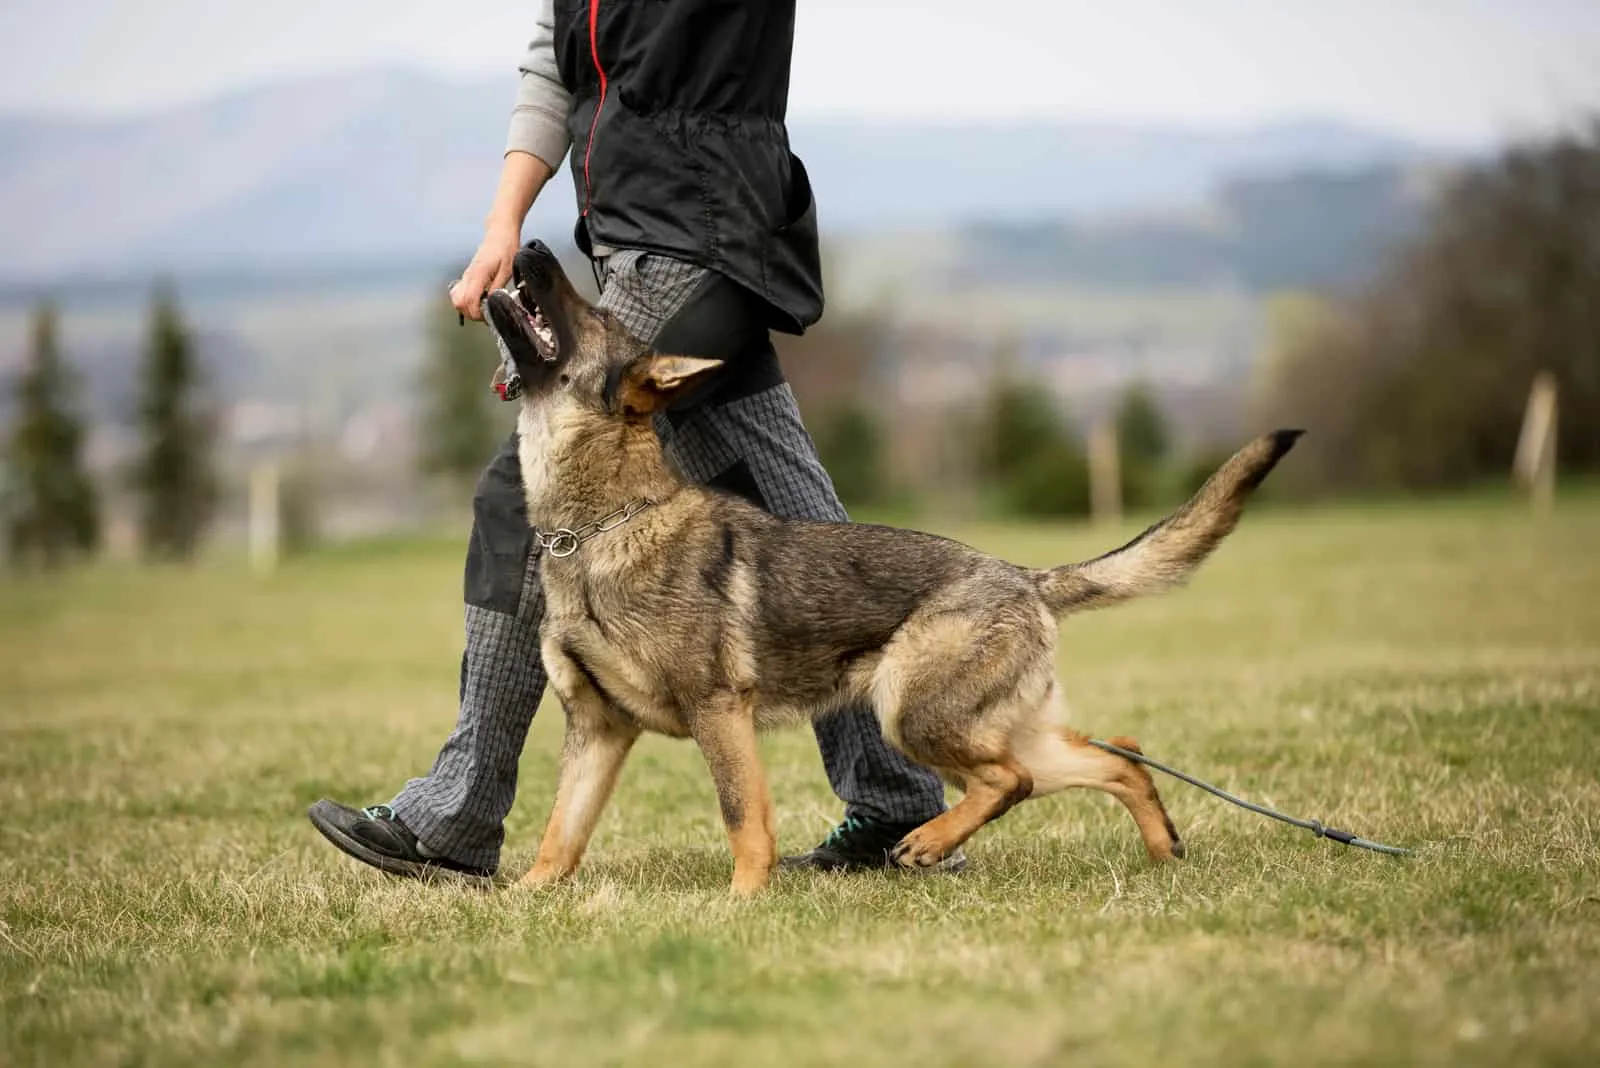 German shepherd in obedience training on green grass